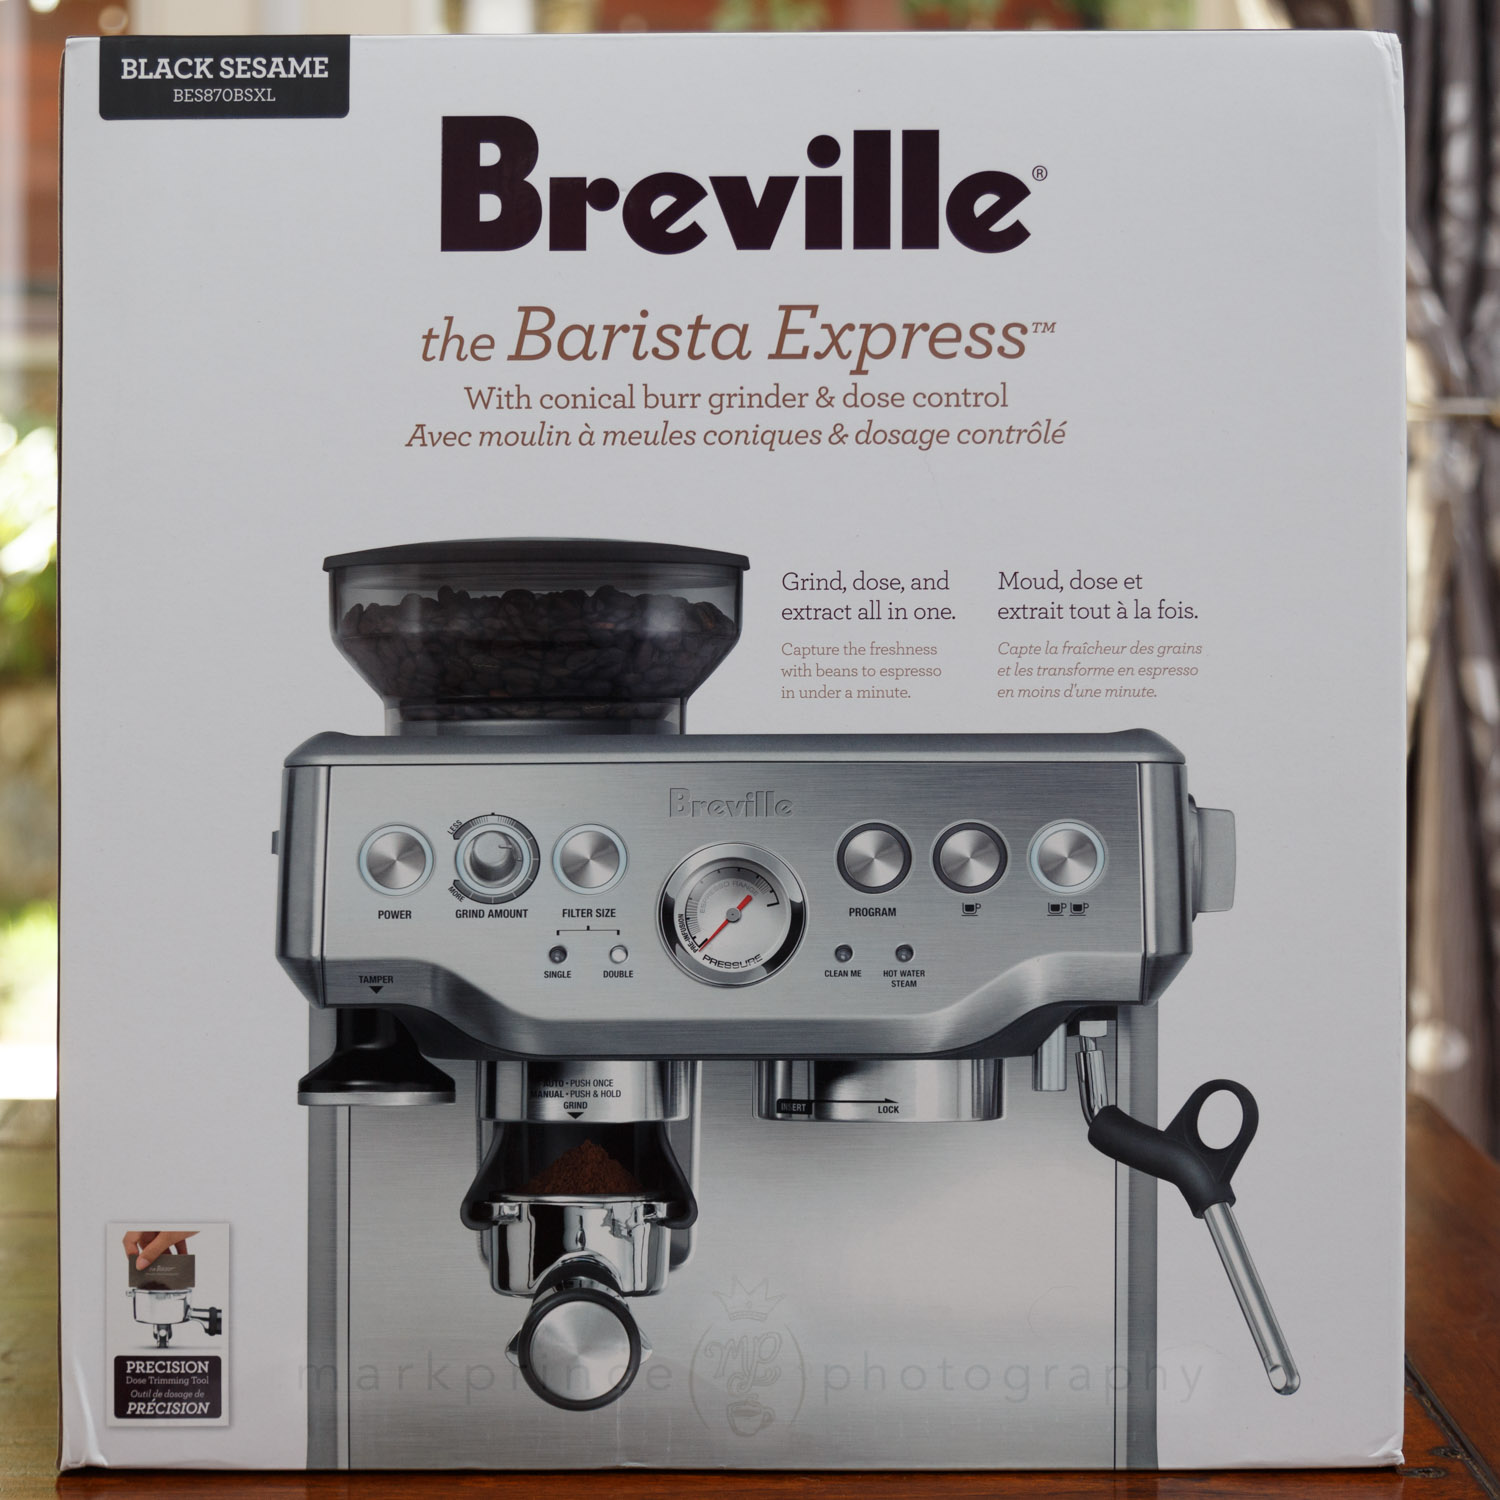 Breville Barista Express Espresso Machine, Black Sesame, BES870BSXL, 2